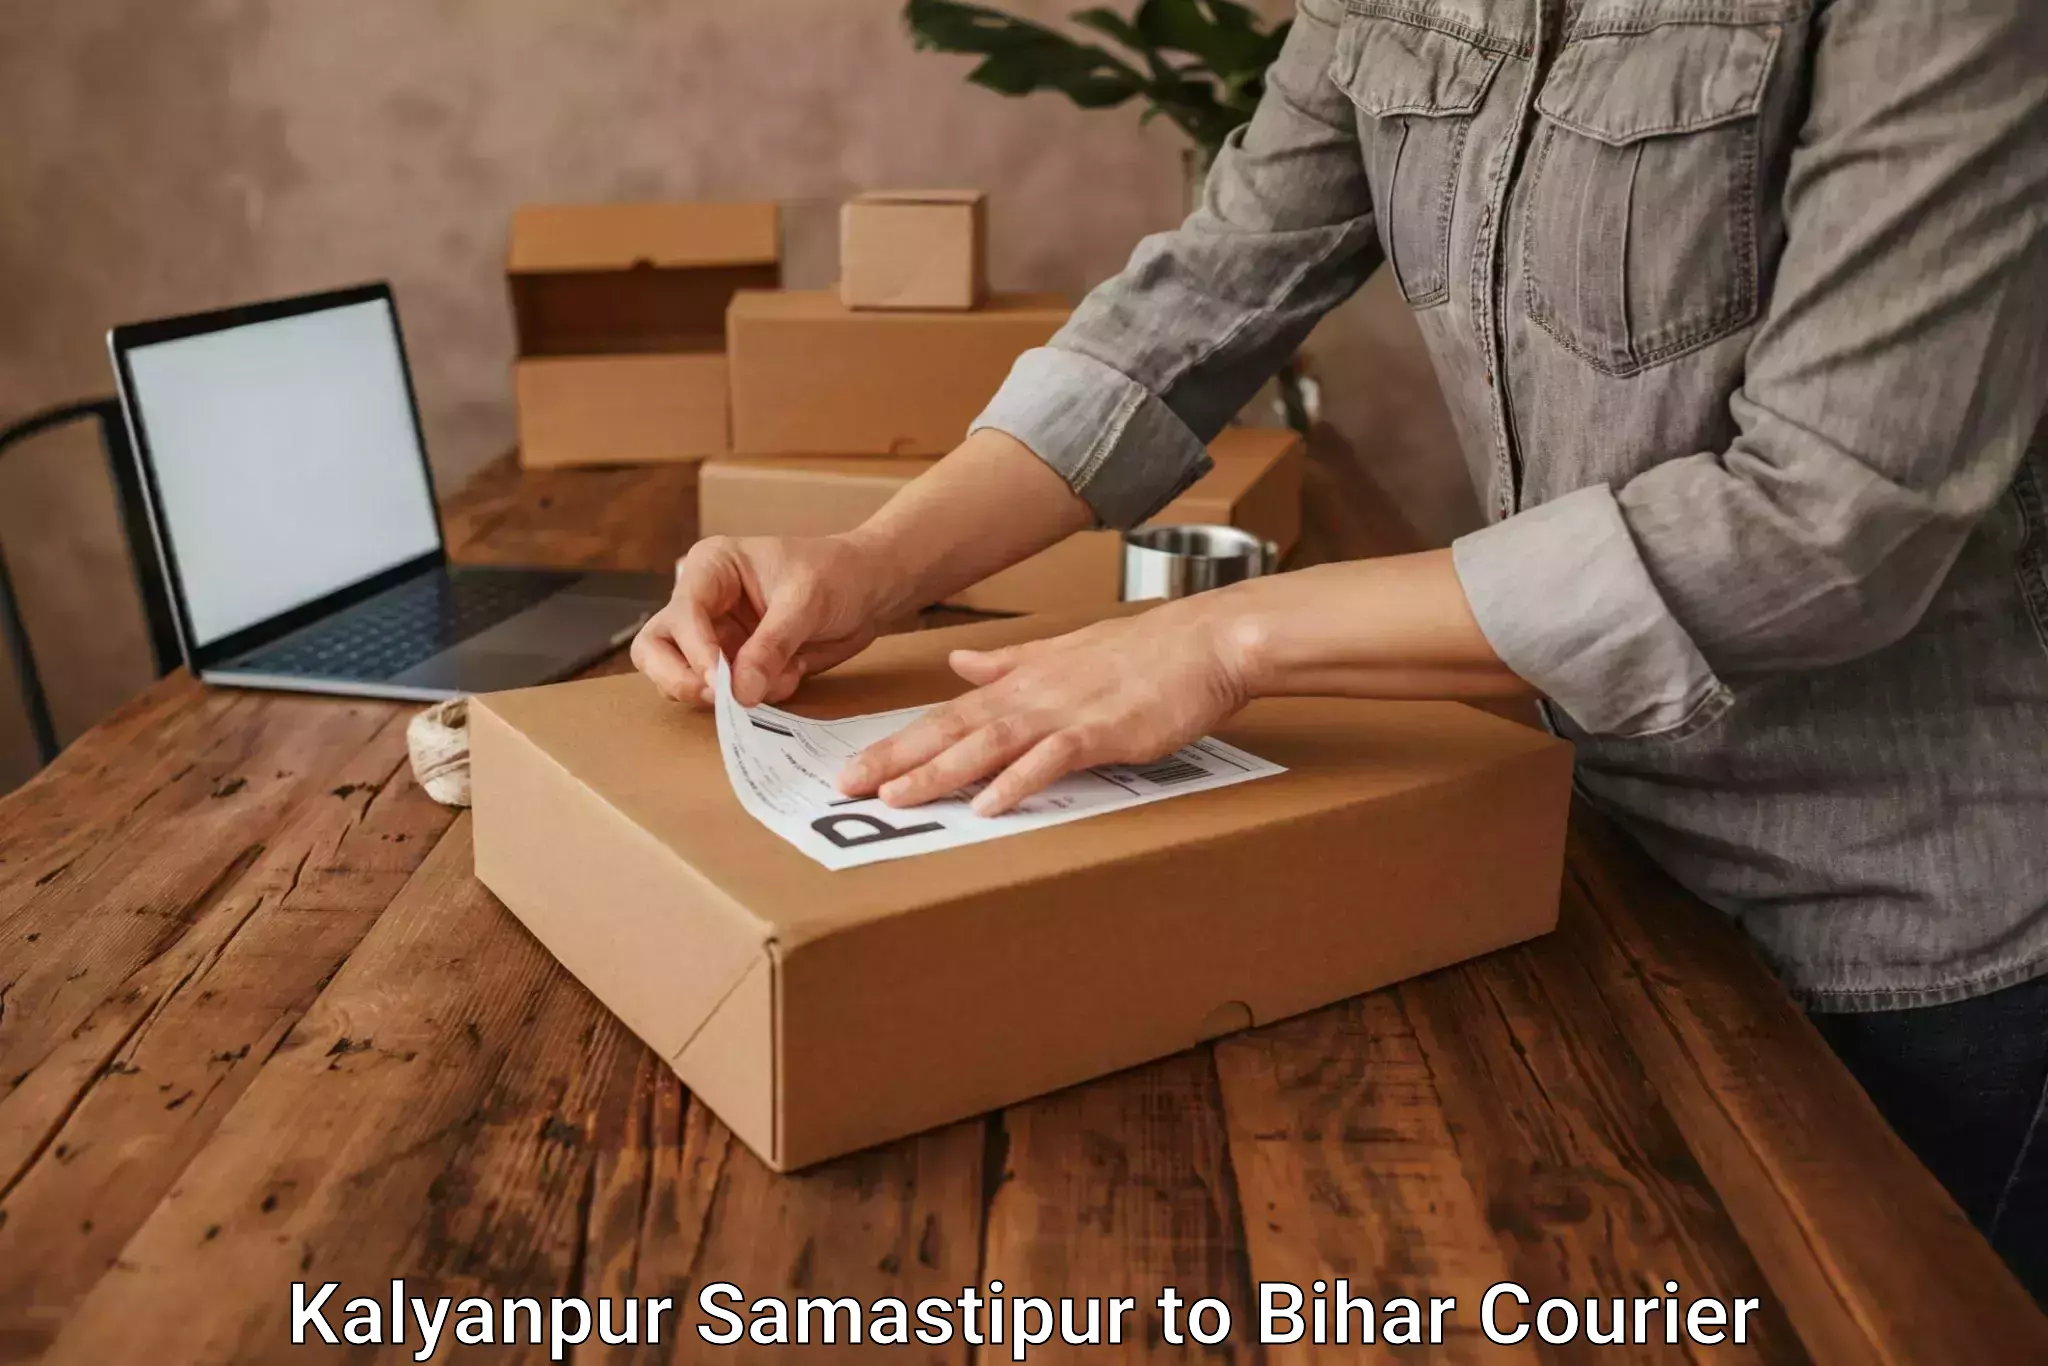 Furniture transport and storage Kalyanpur Samastipur to Bihar